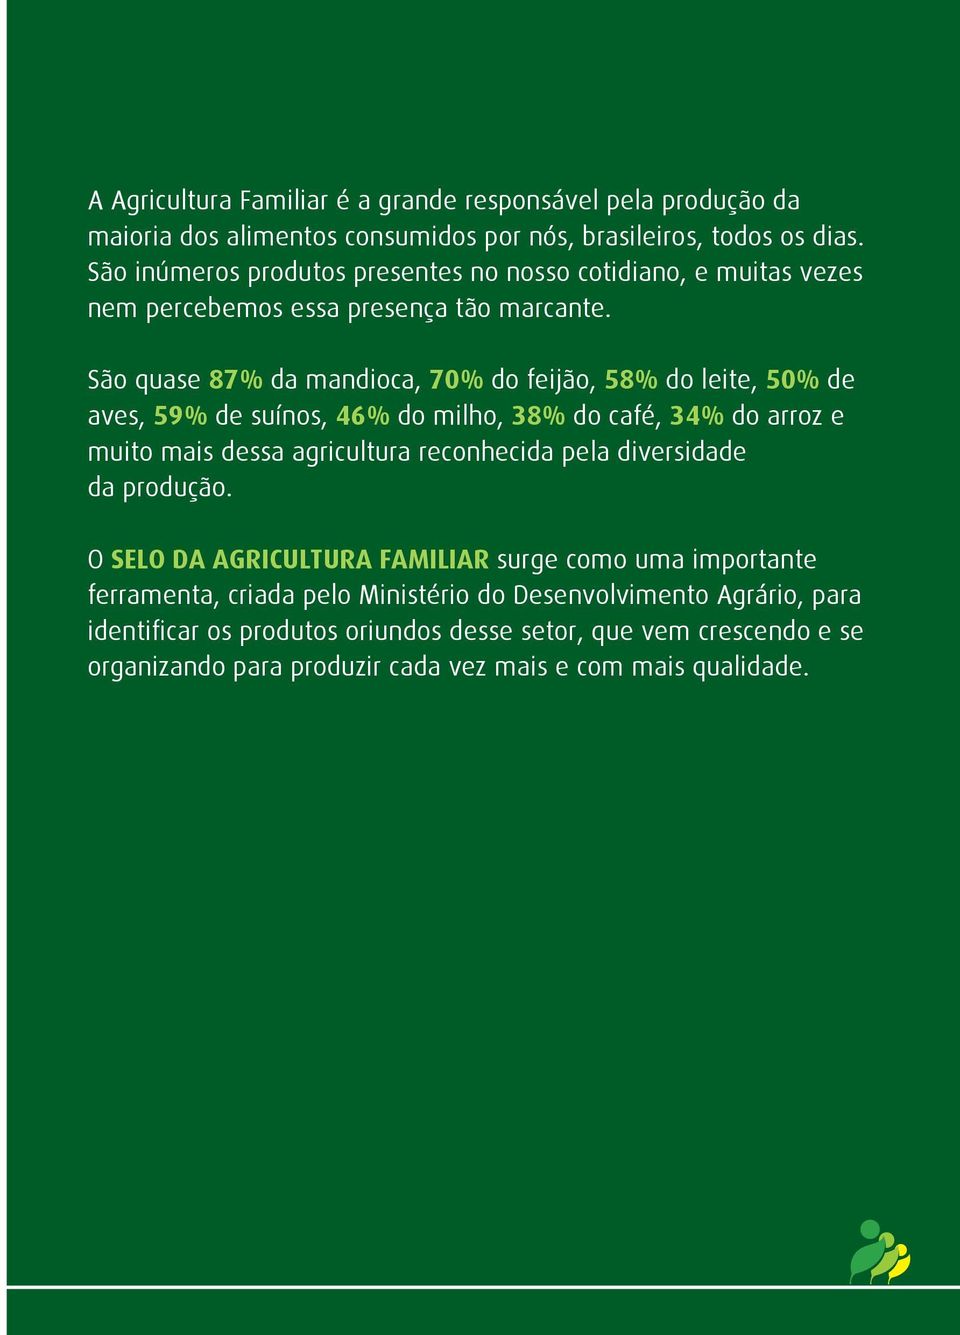 São quase 87% da mandioca, 70% do feijão, 58% do leite, 50% de aves, 59% de suínos, 46% do milho, 38% do café, 34% do arroz e muito mais dessa agricultura reconhecida pela